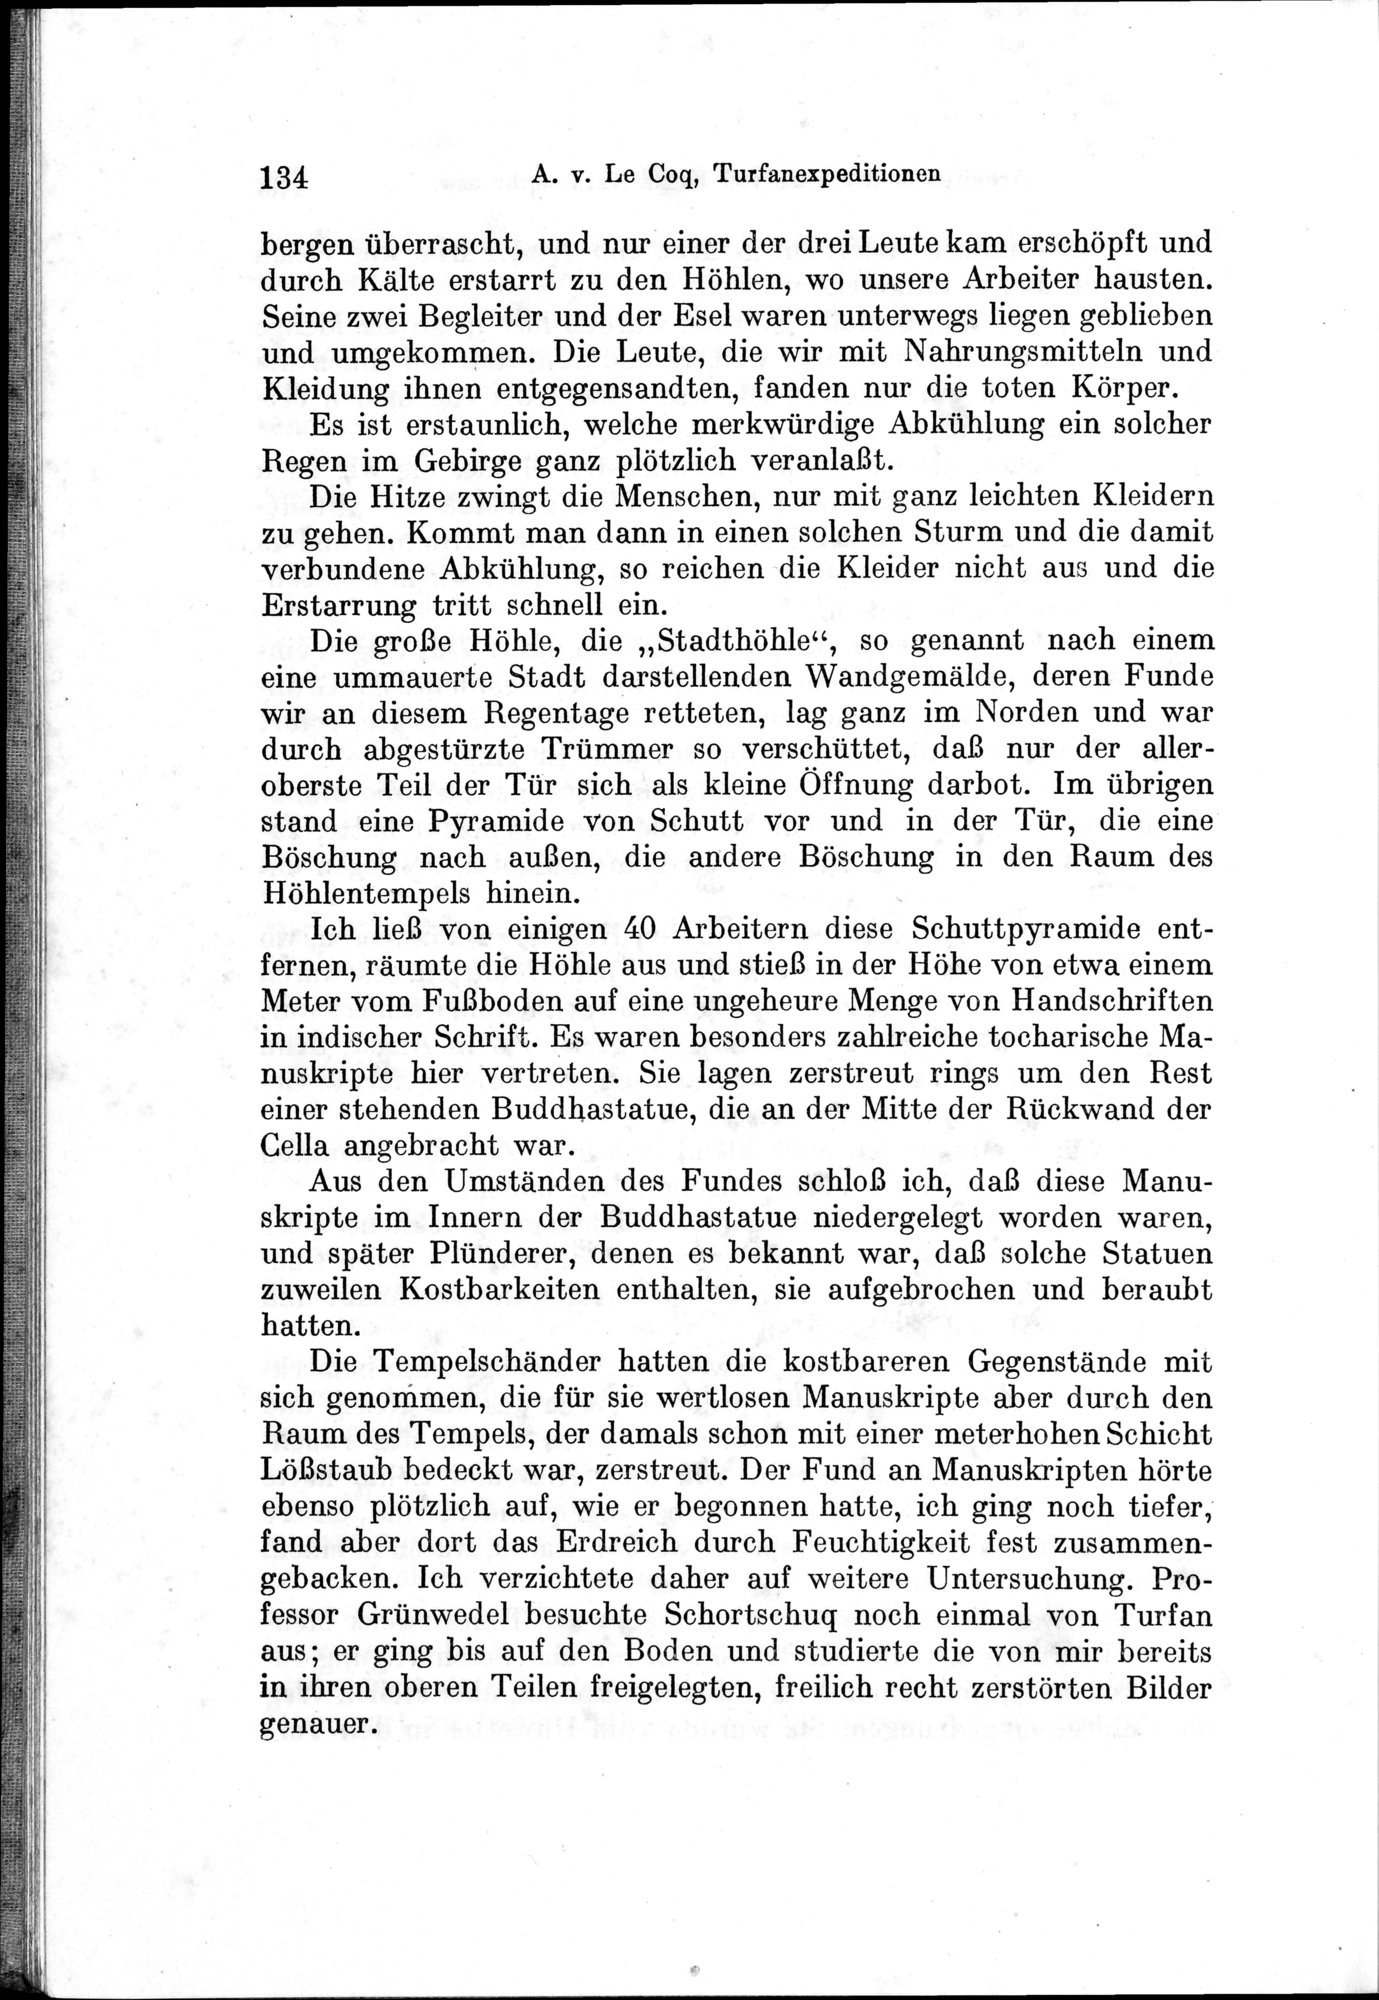 Auf Hellas Spuren in Ostturkistan : vol.1 / 192 ページ（白黒高解像度画像）